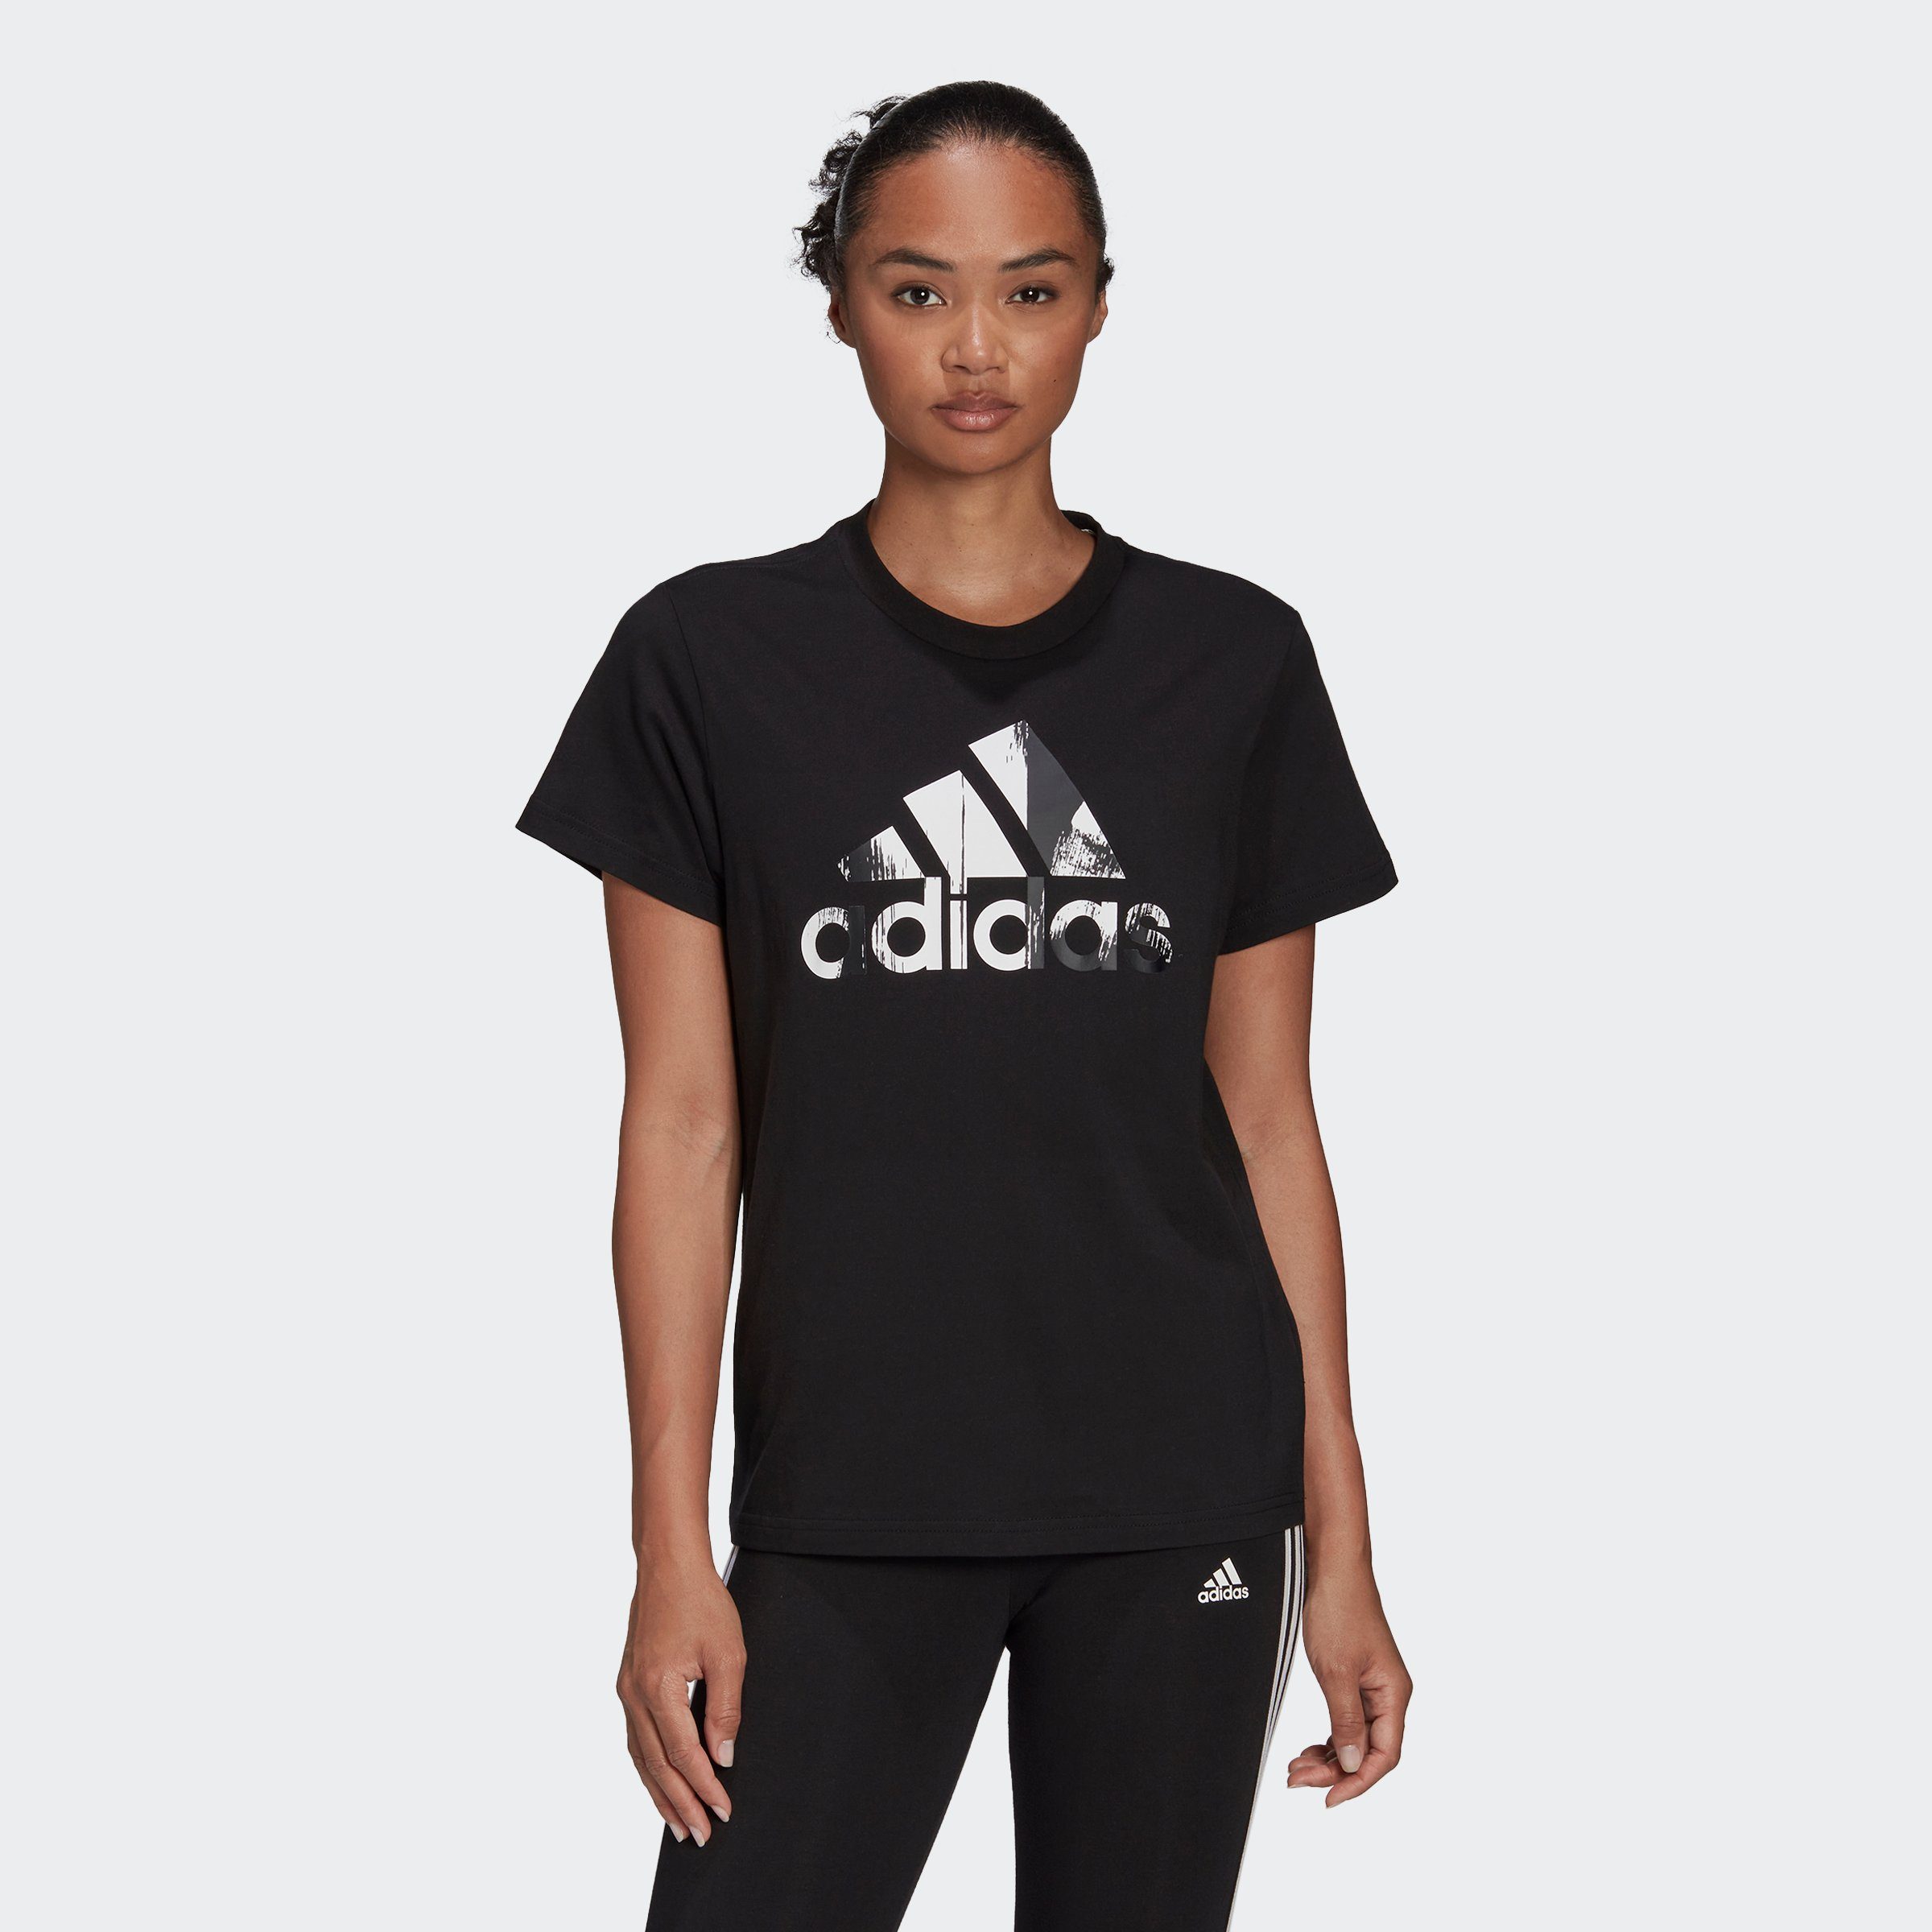 adidas Performance Damen T-Shirts online kaufen | OTTO